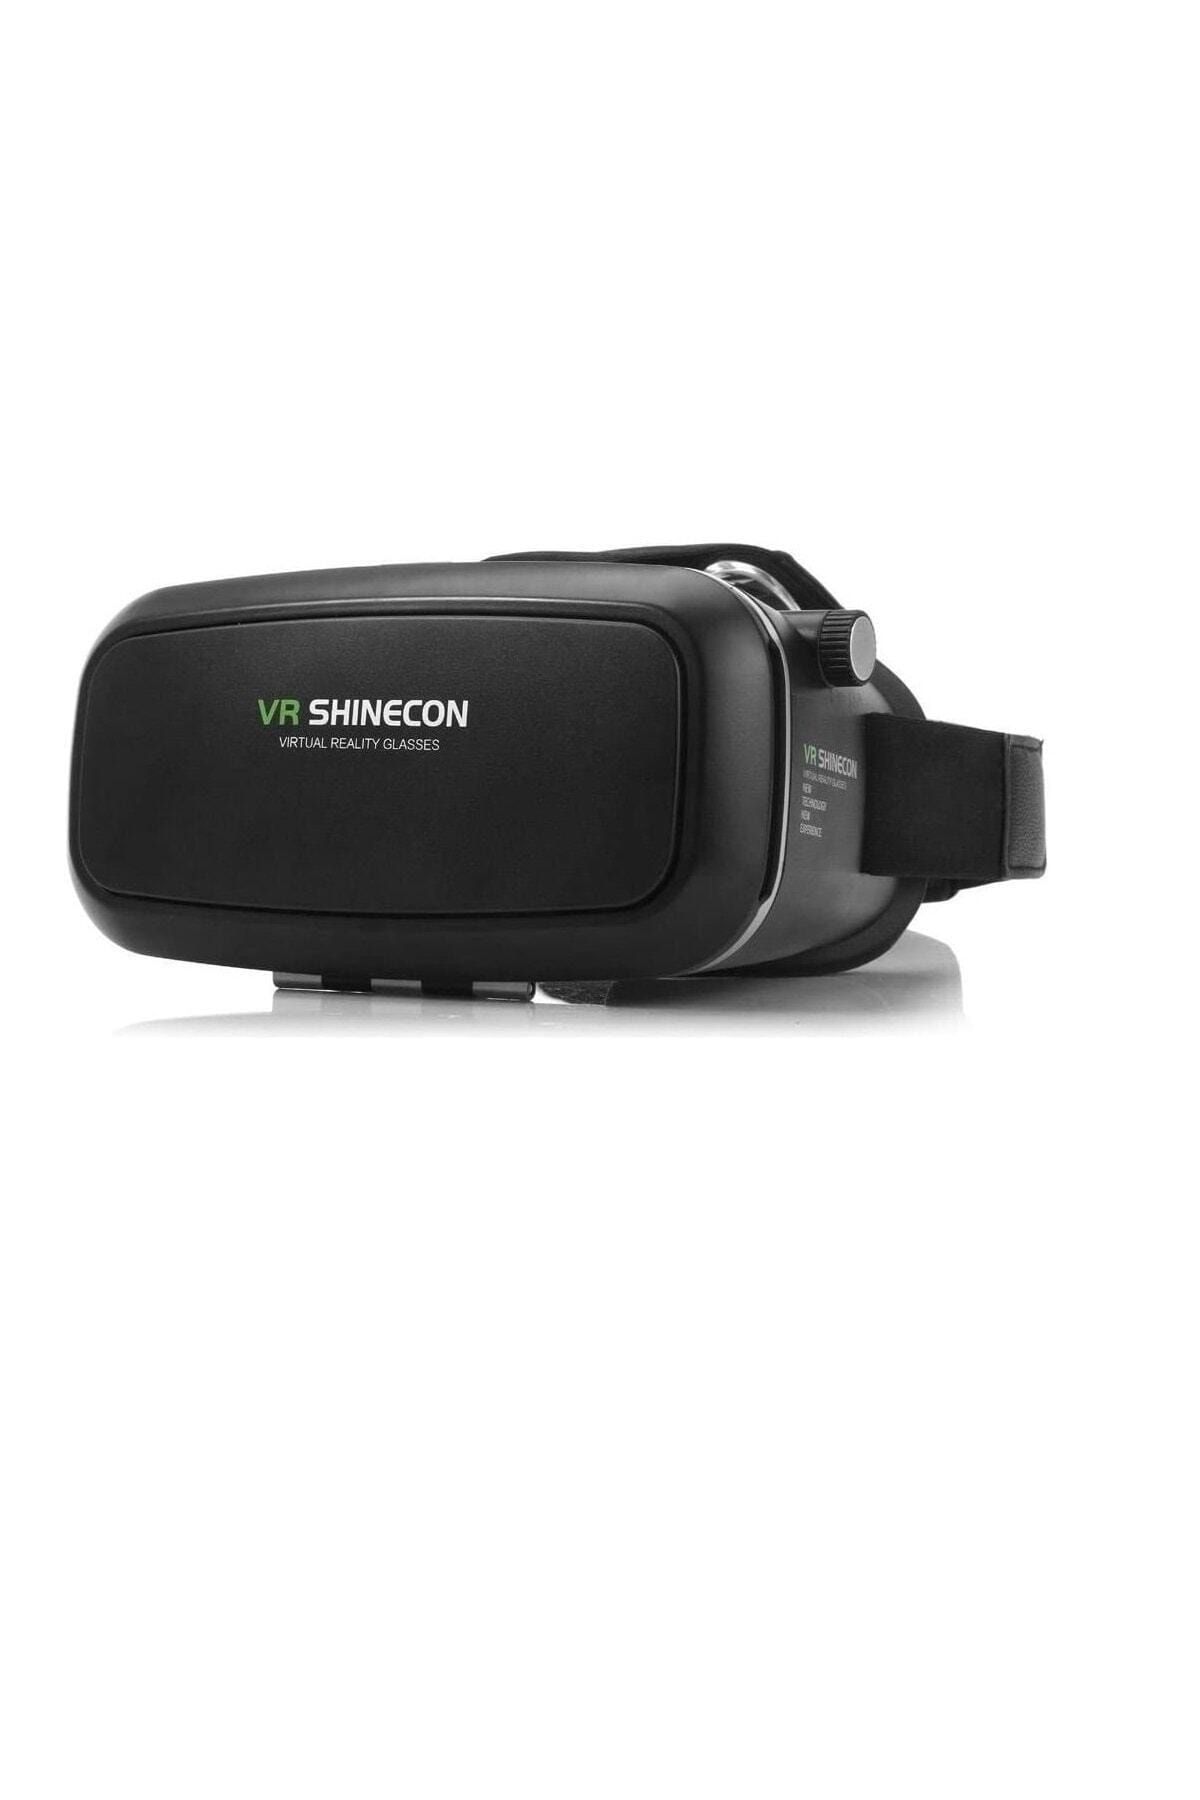 VR Shinecon Vr 360 Sanal Gerçeklik Yetişkin Xxx Video Oyun Içerik Gözlüğü